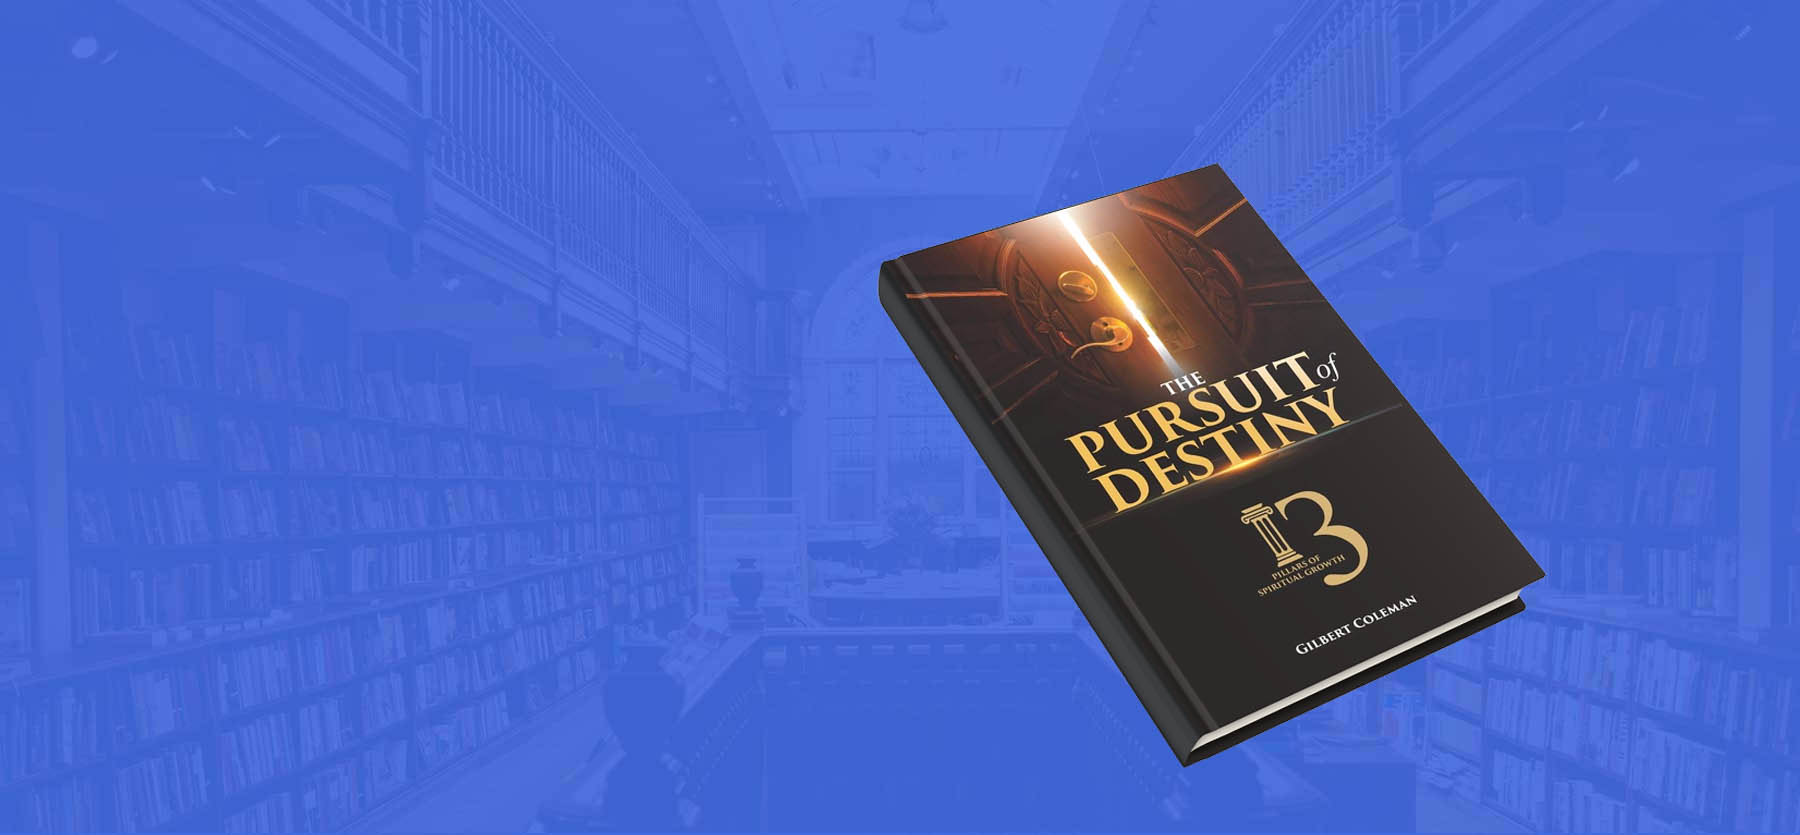 Web DesignThe PursuitOf Destiny2019 - 2020